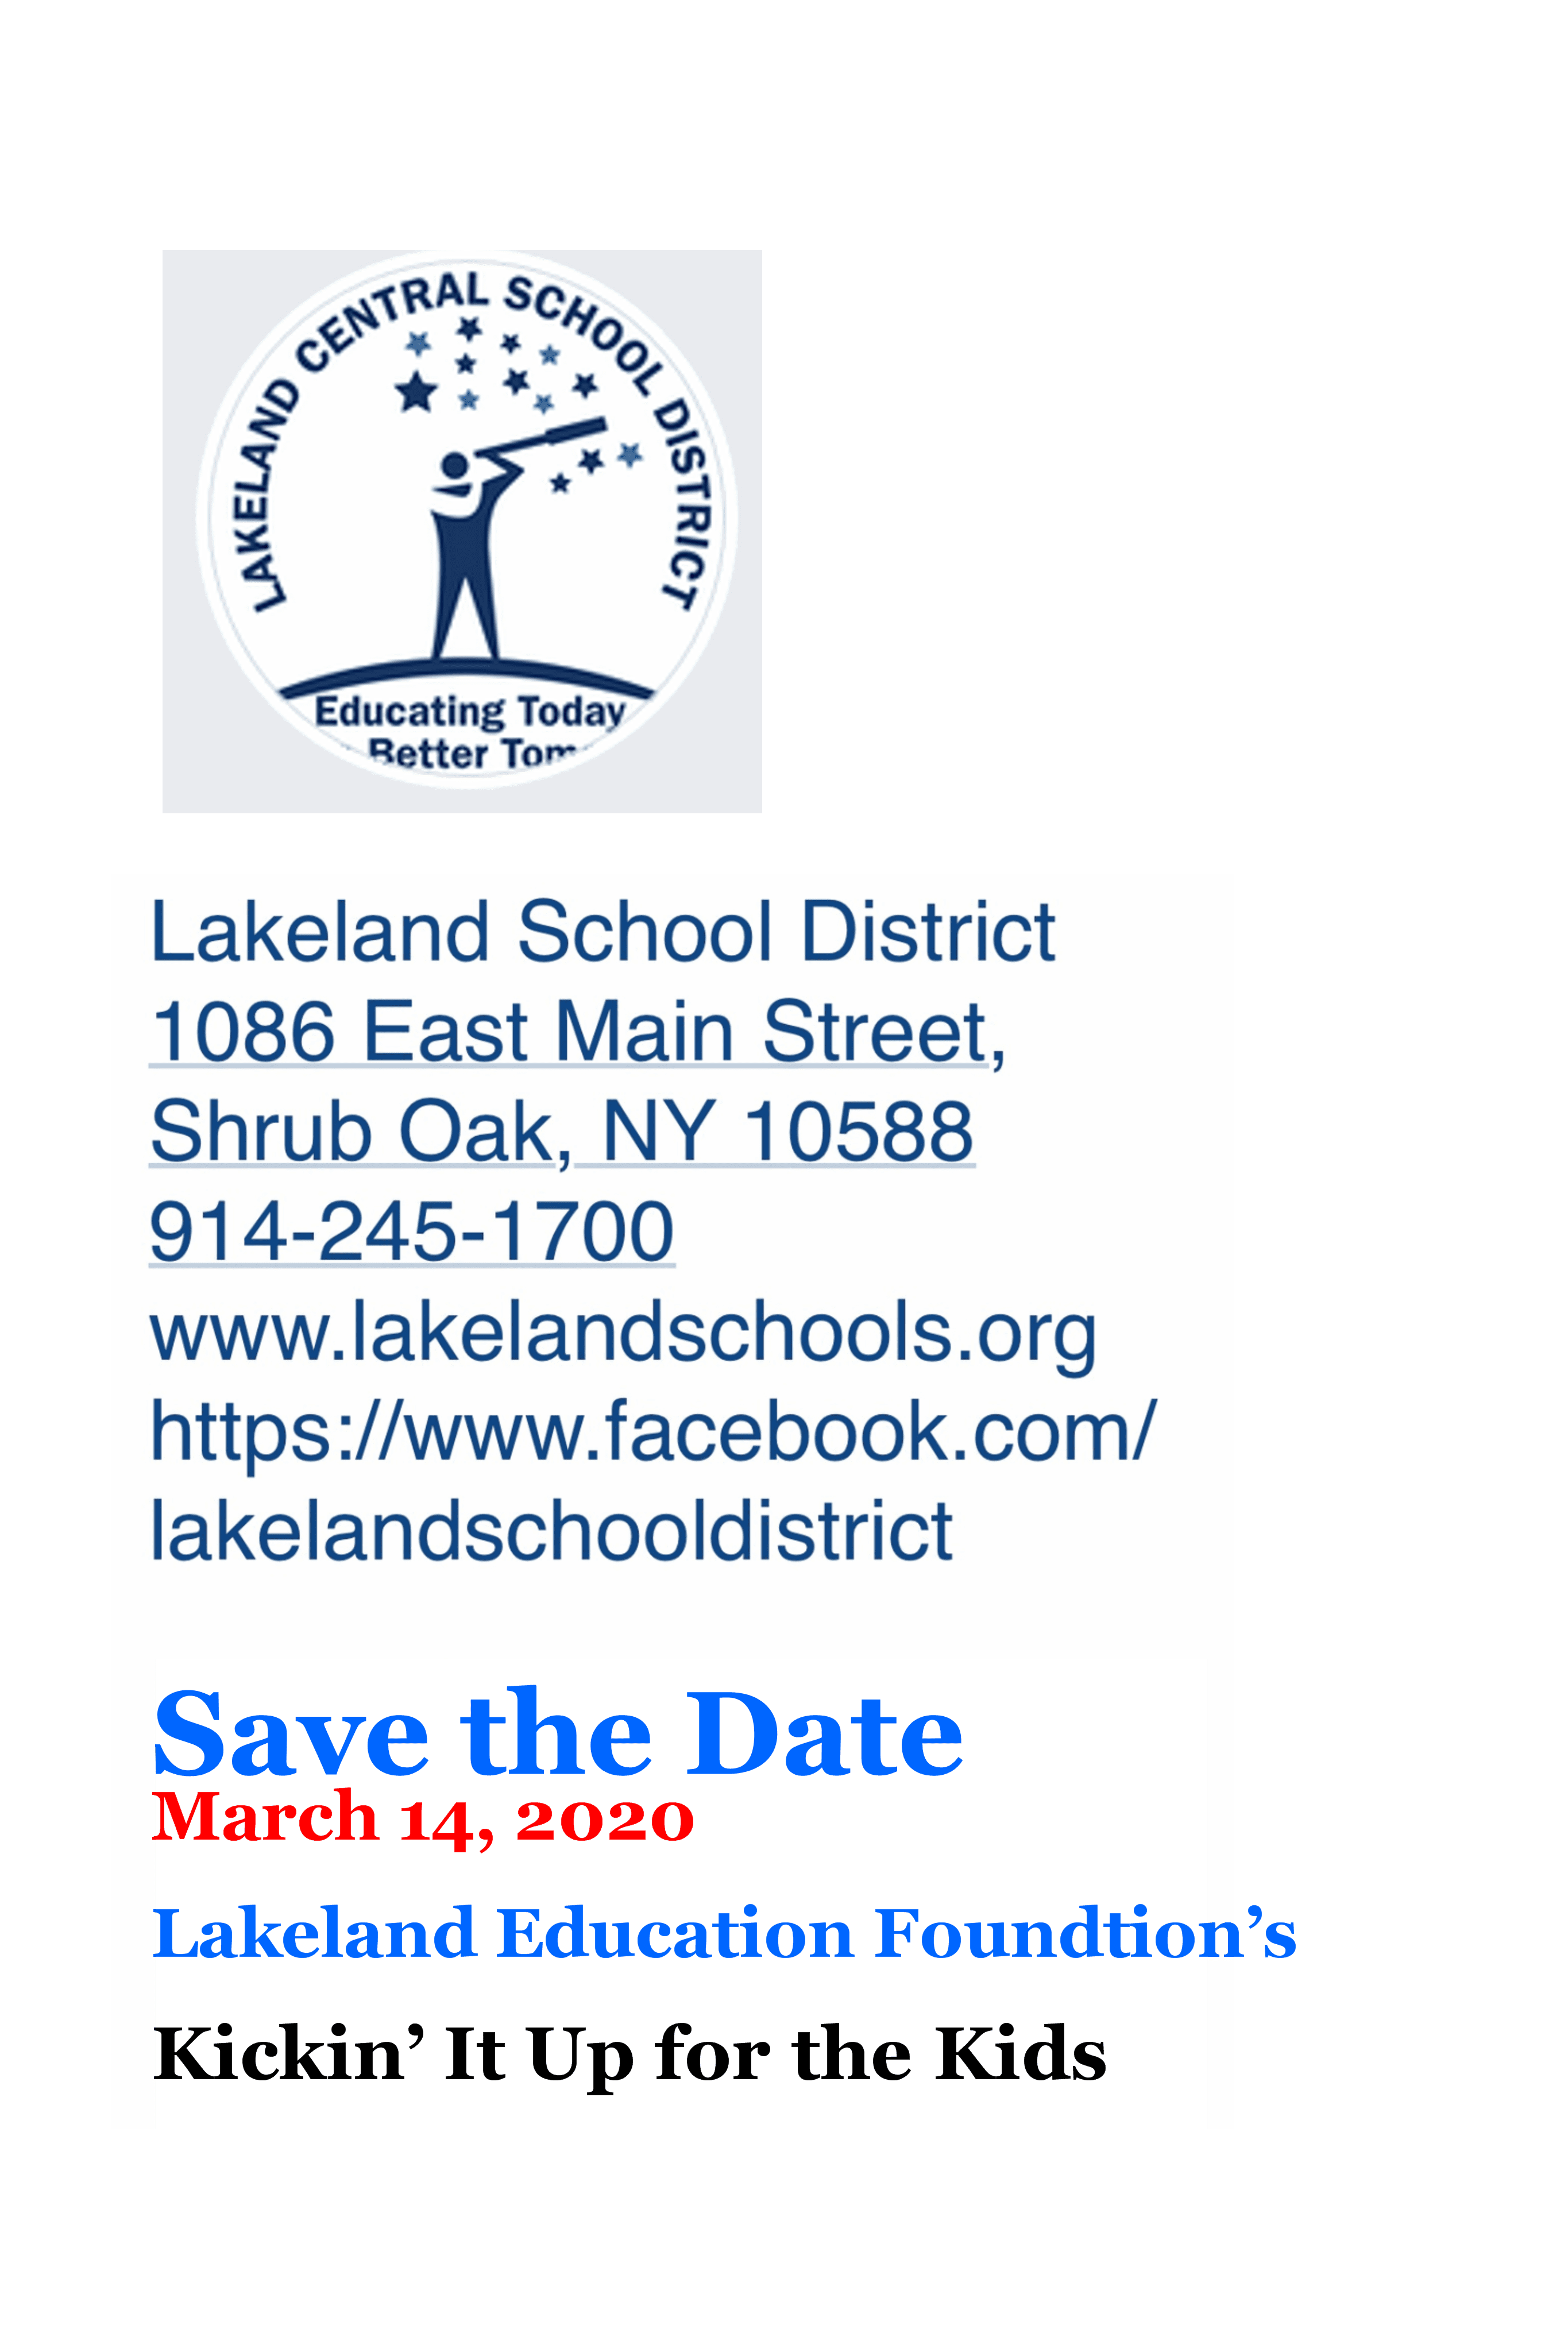 Lakeland Education Foundation